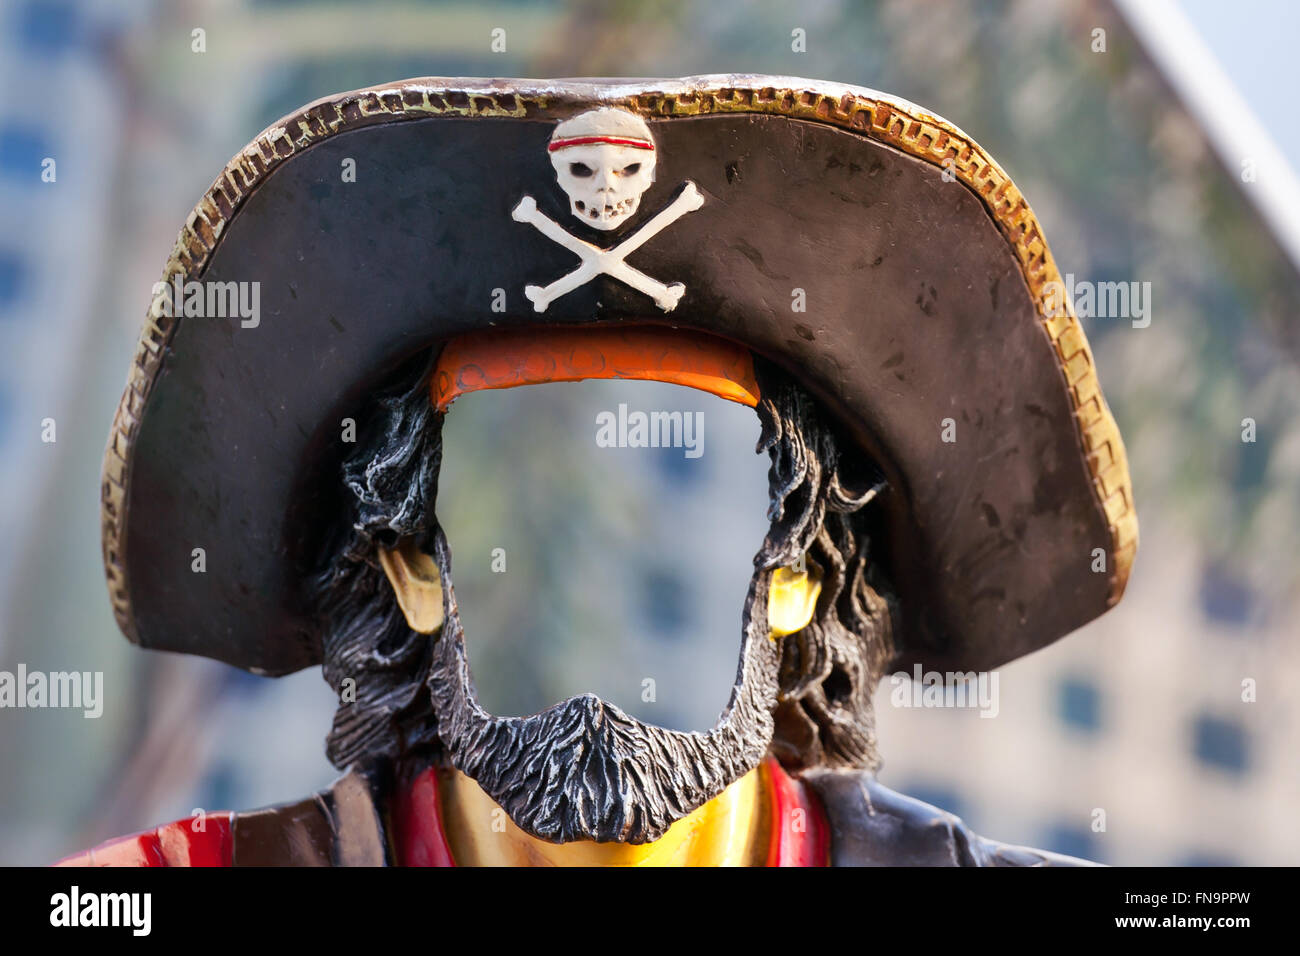 Pirate mask Stock Photo